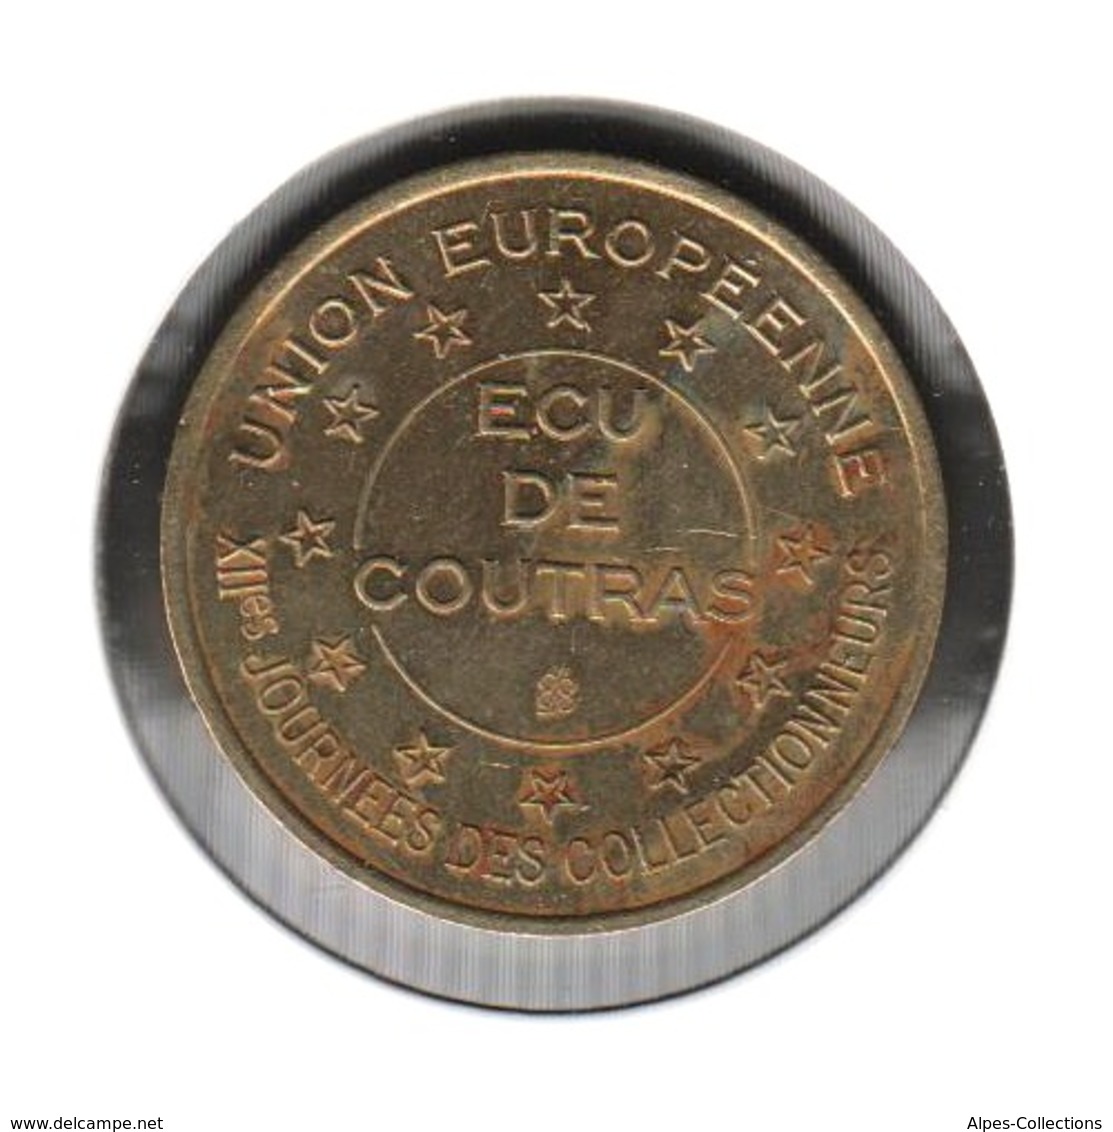 COUTRAS - EC0010.2 - 1 ECU DES VILLES - Réf: T21 - 1994 - Euros Des Villes